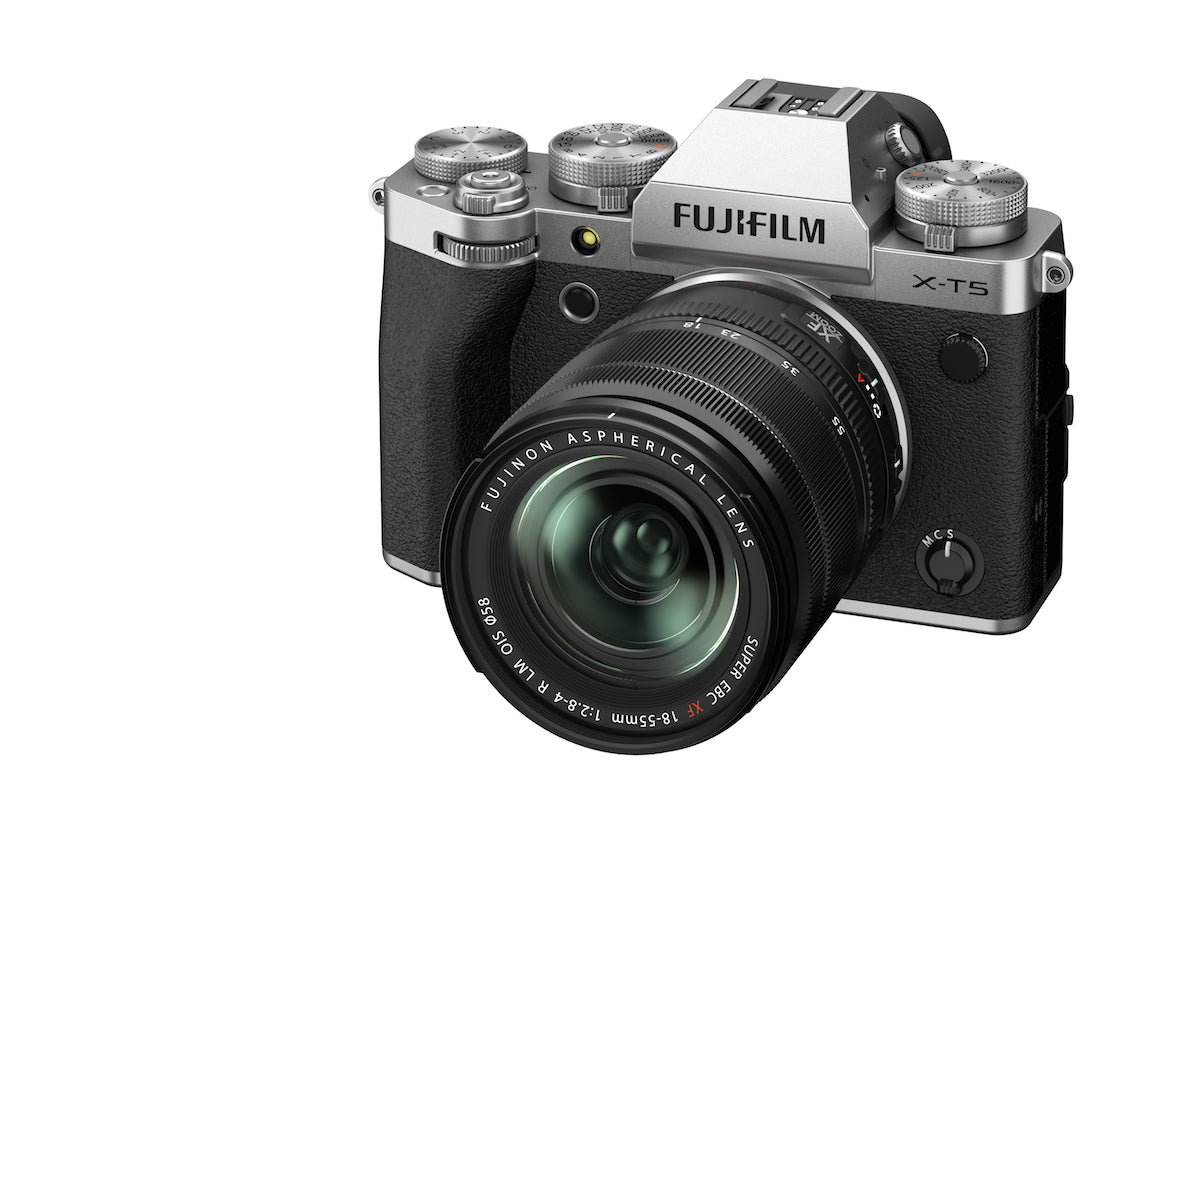 Fujifilm X-T5 Digital Camera w/18-55mm Lens Kit (Silver)